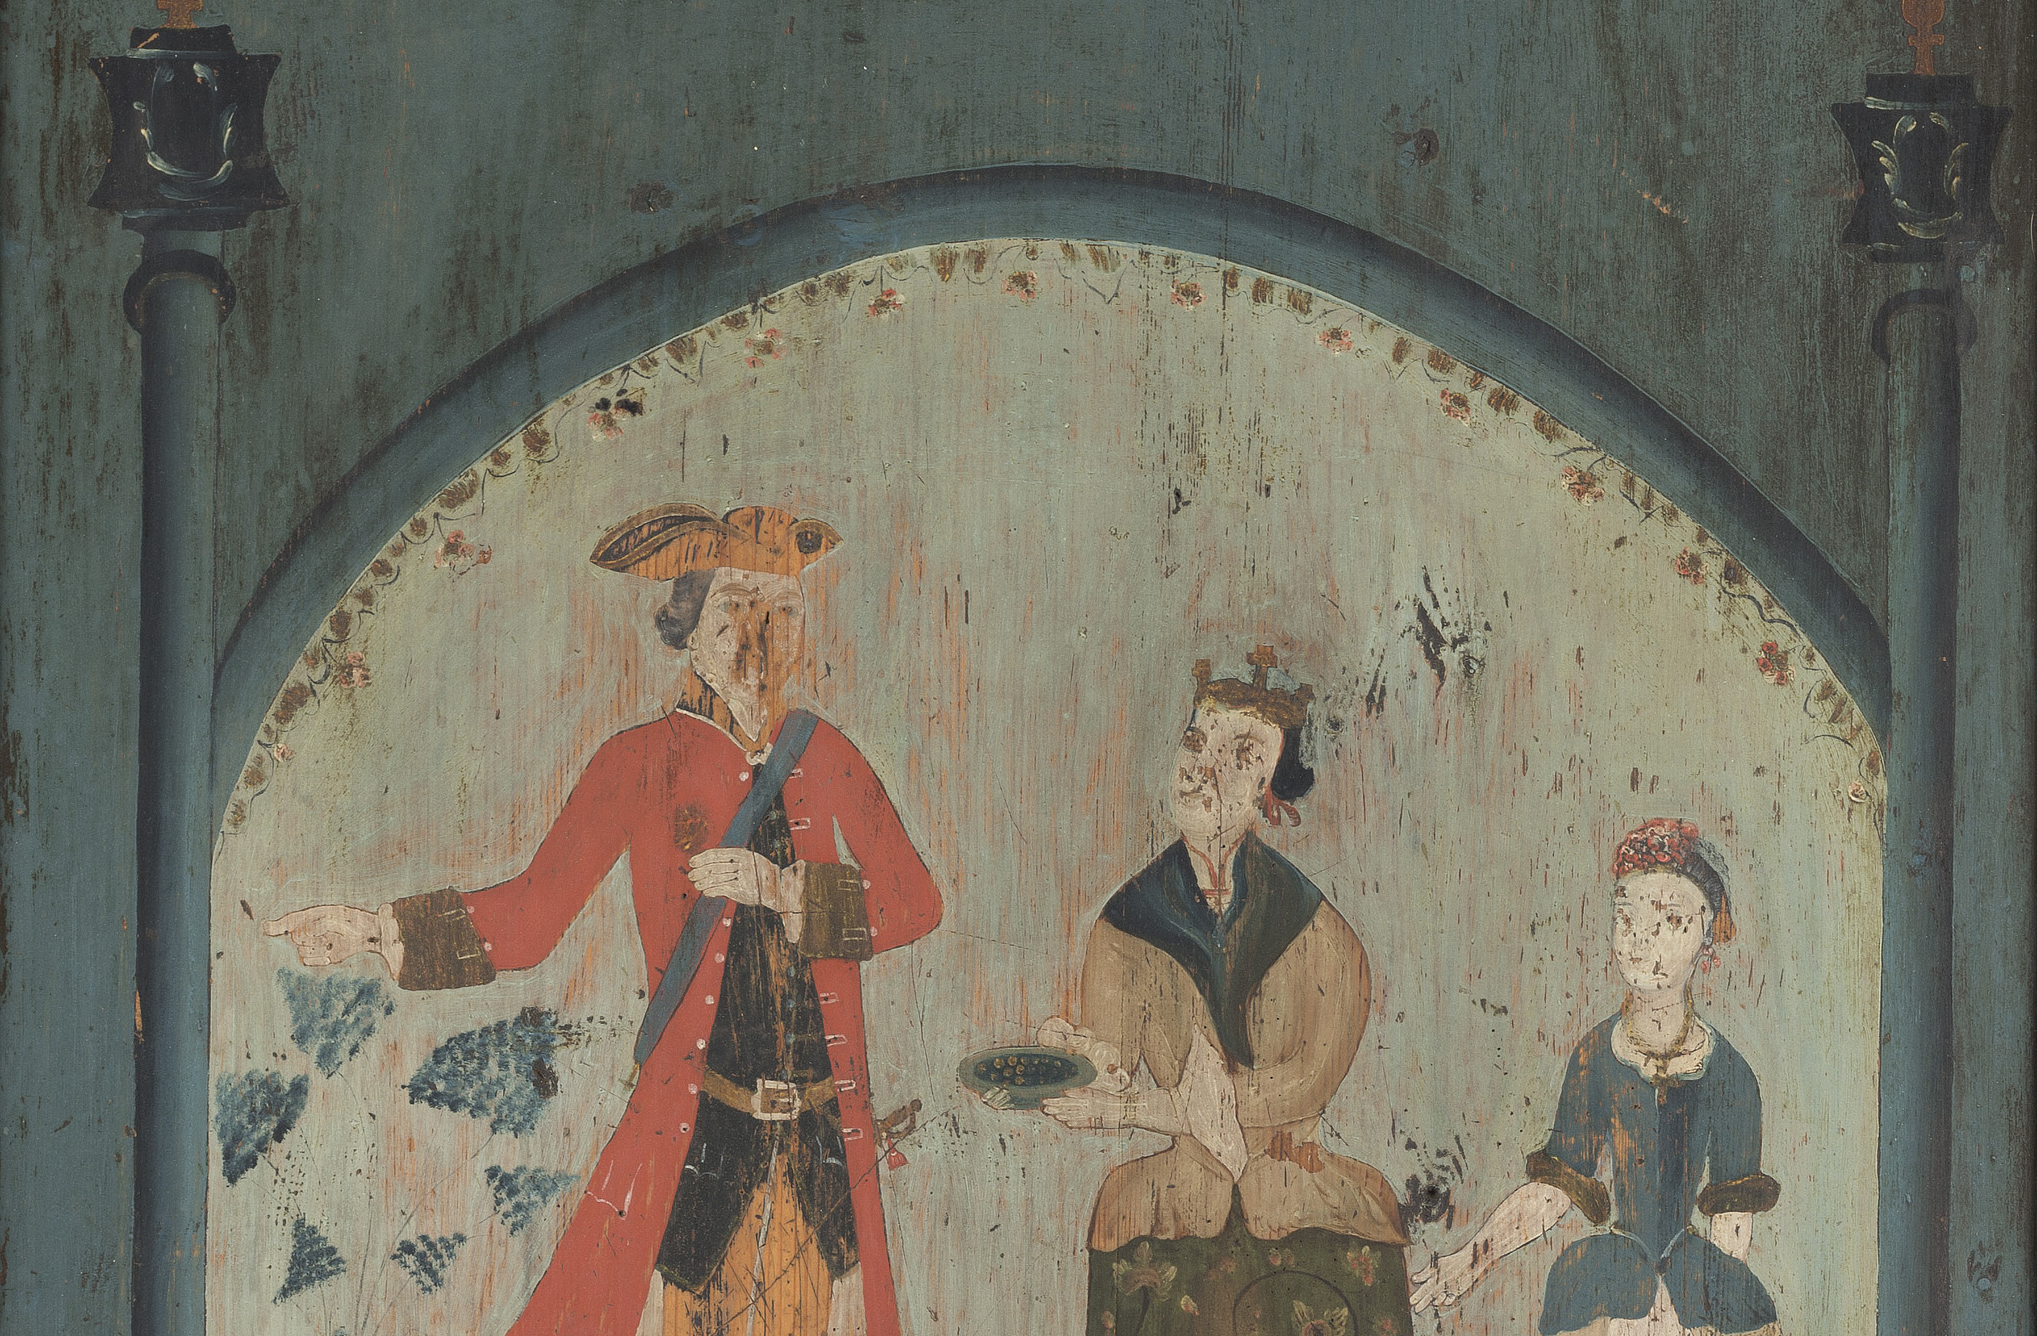 Høysetetavle - utsnitt som viser kong Salomo og dronningen av Saba med sin terne. Foto: Øyvind Andersen, Østfoldmuseene.